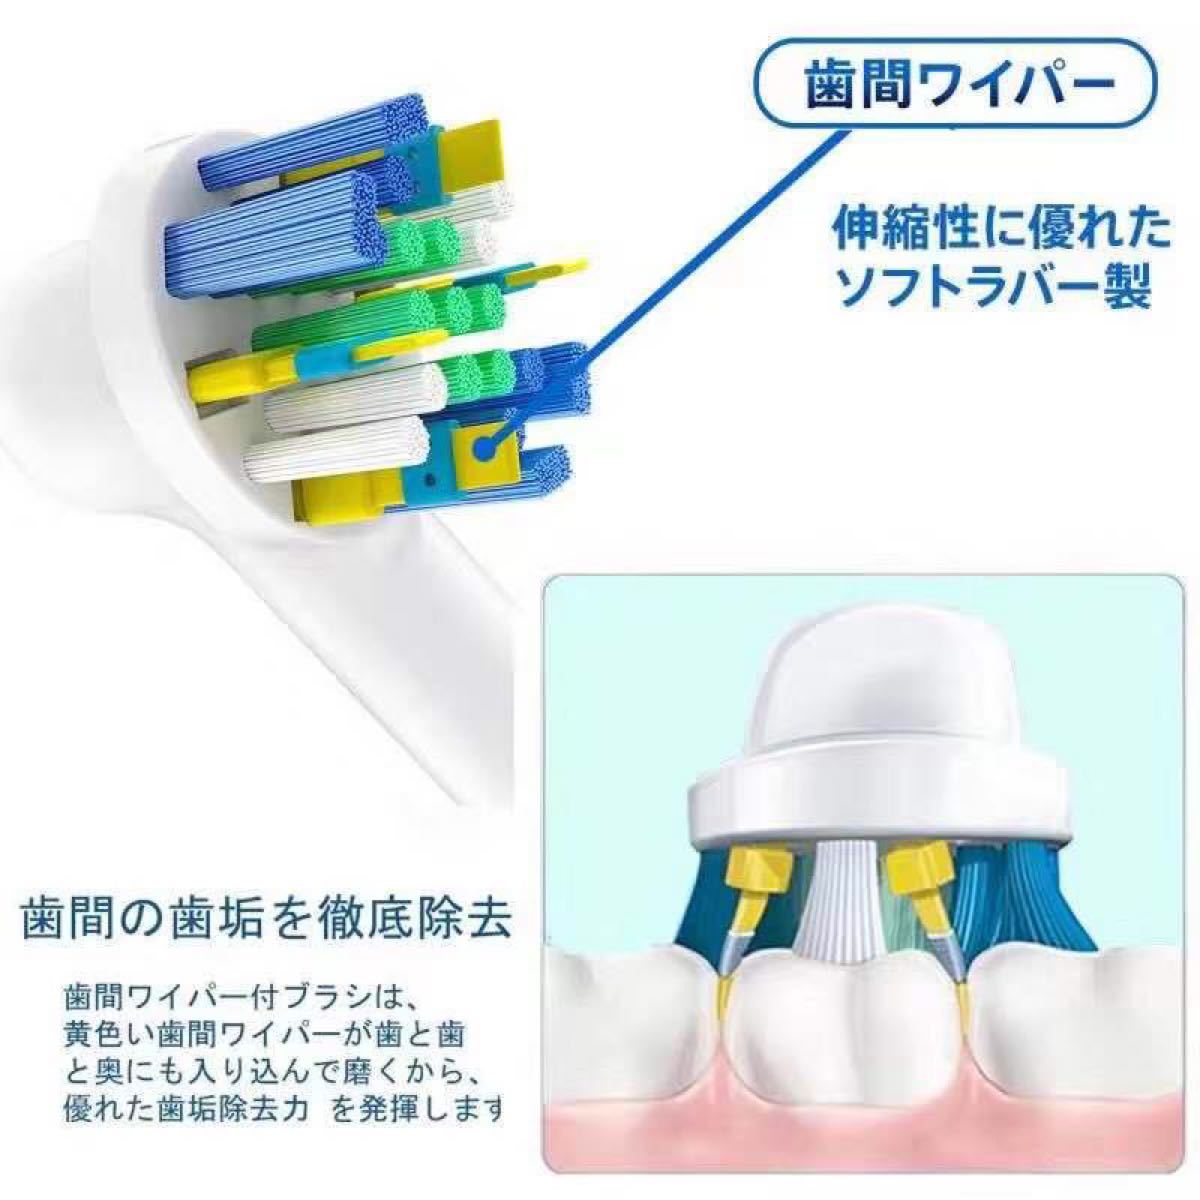 【24本セット】BRAUN Oral-B ブラウンオーラルB 替え 替えブラシ 互換 歯ブラシ 電動歯ブラシ ブラウン オーラルB